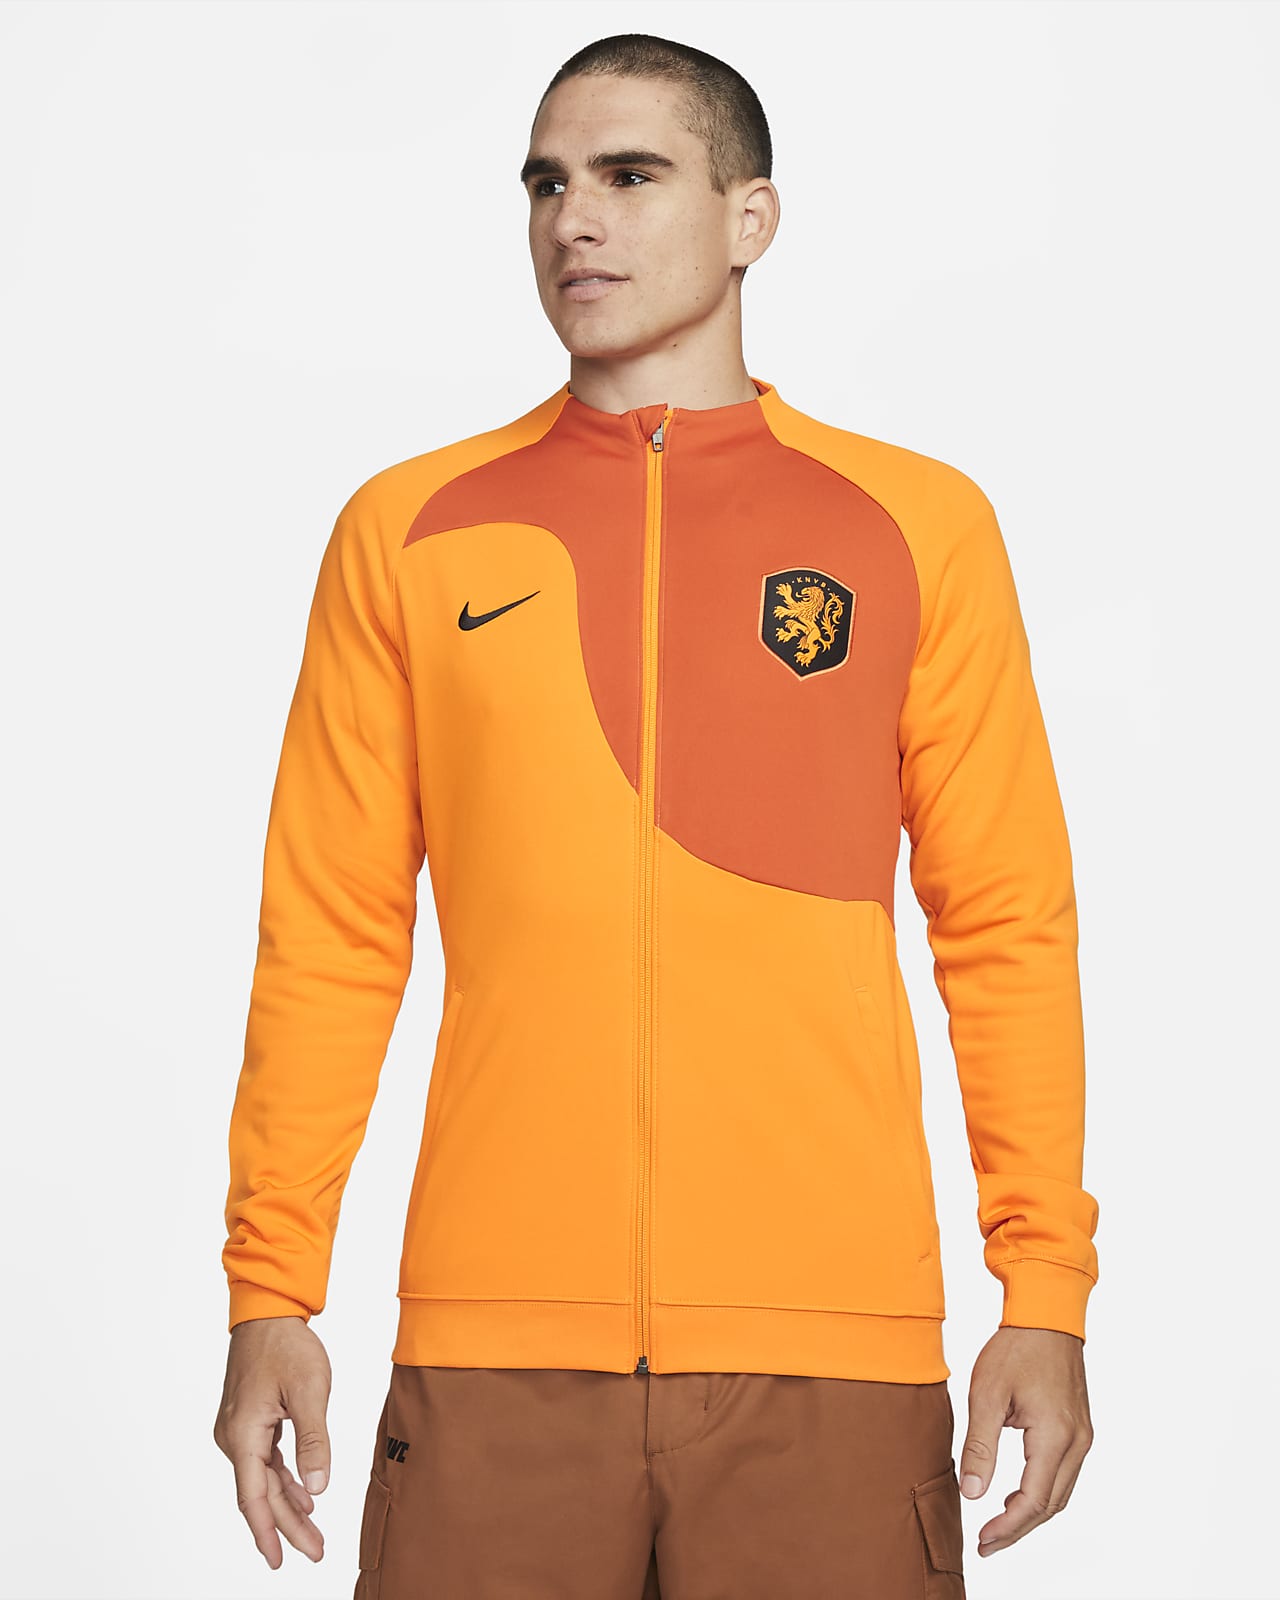 Netherlands Academy Chaqueta fútbol de Knit - Hombre. Nike ES